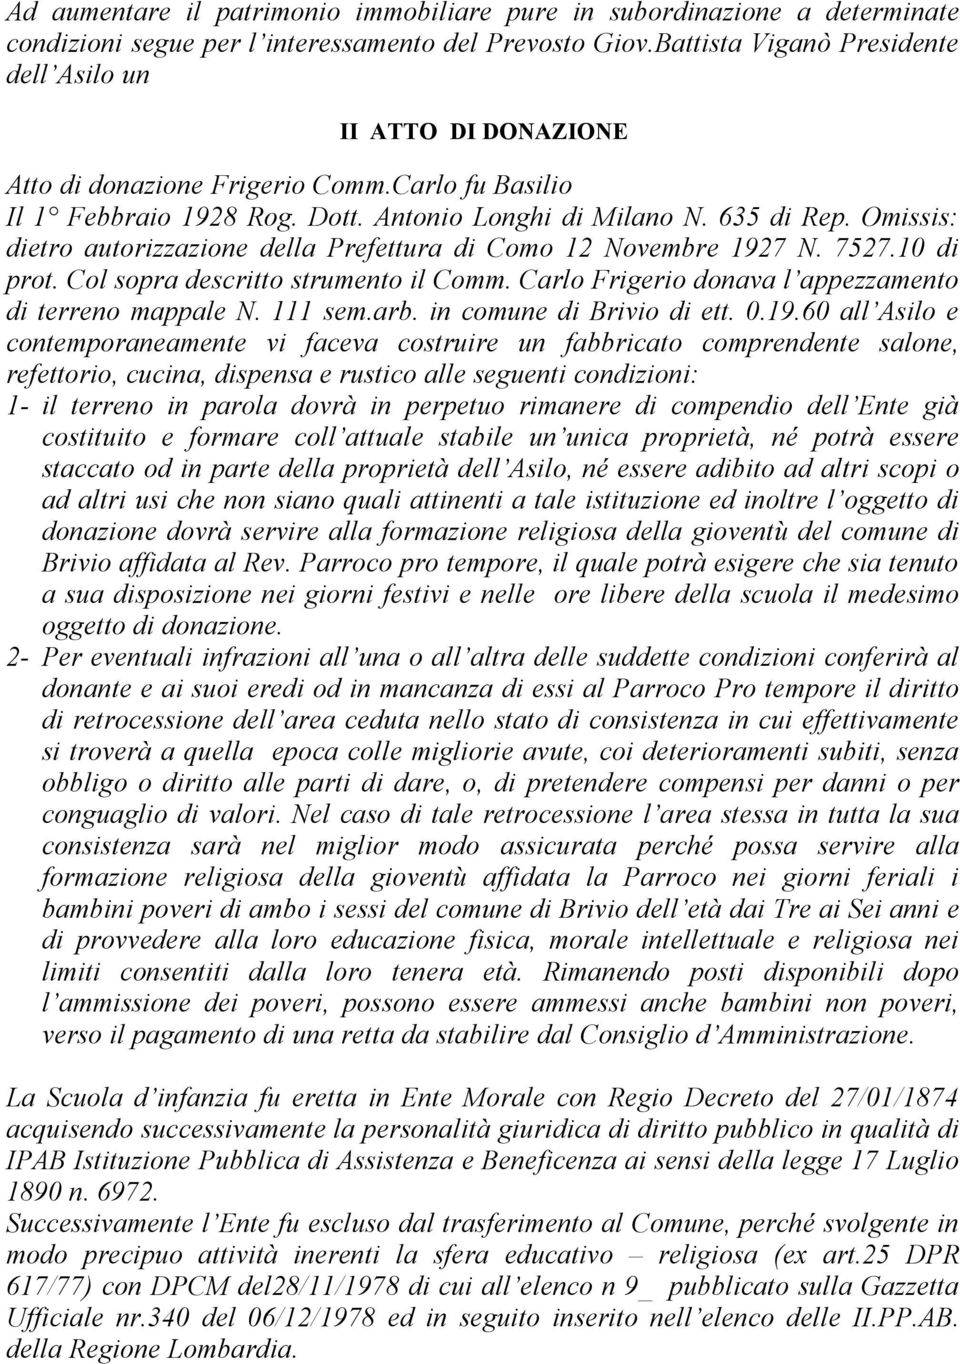 Omissis: dietro autorizzazione della Prefettura di Como 12 Novembre 1927 N. 7527.10 di prot. Col sopra descritto strumento il Comm. Carlo Frigerio donava l appezzamento di terreno mappale N. 111 sem.